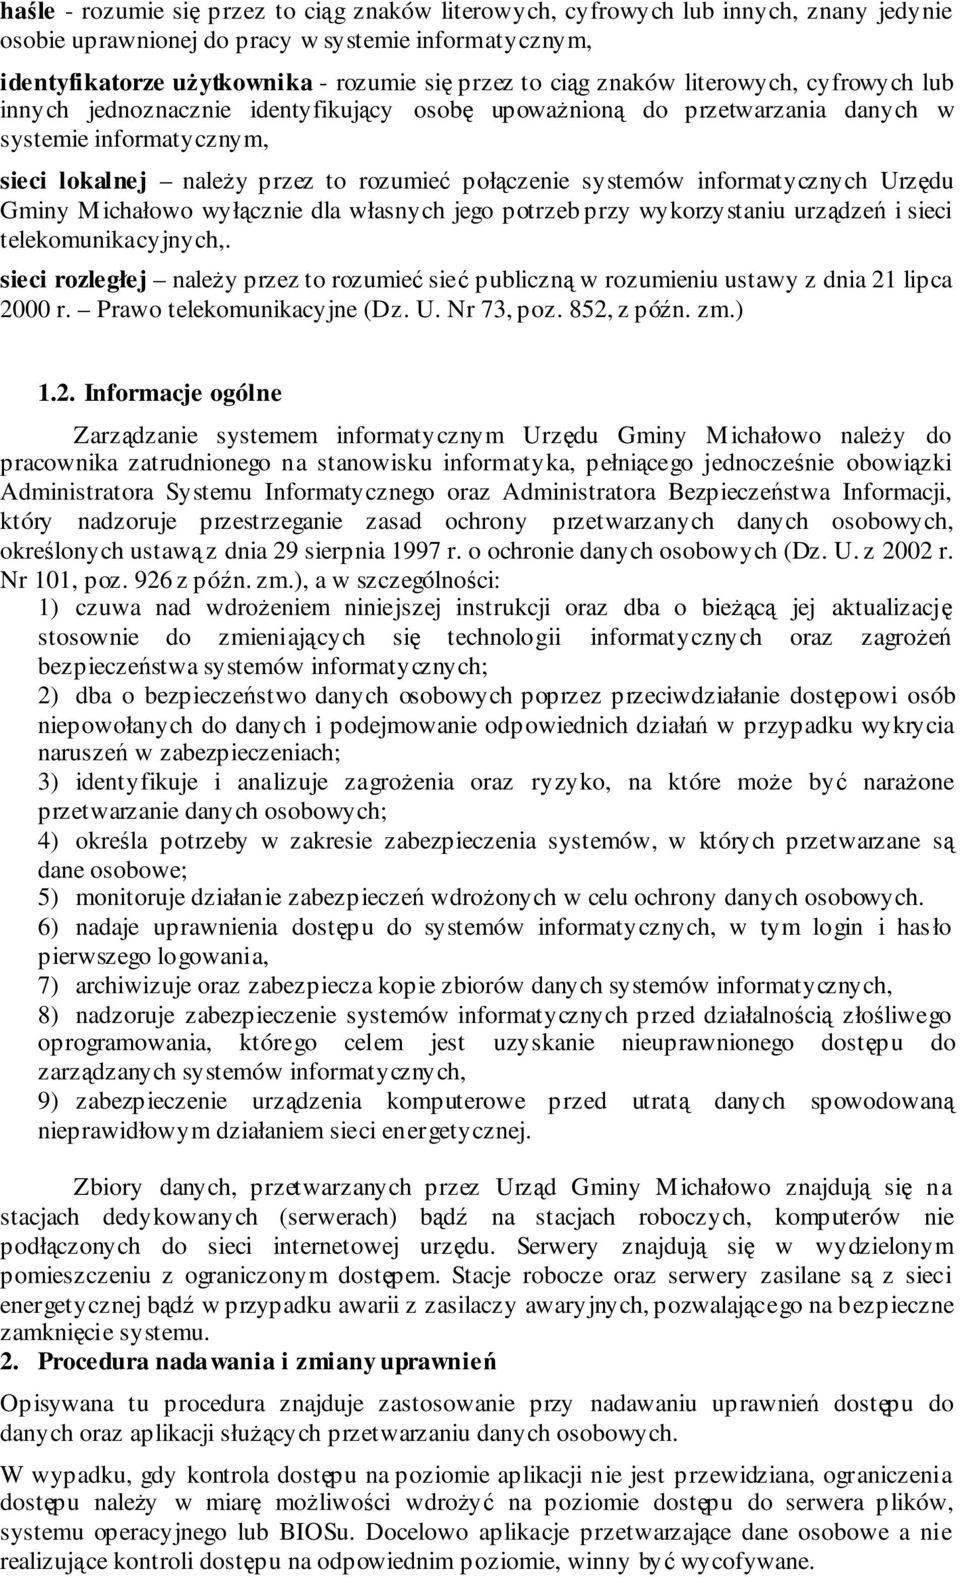 informatycznych Urzdu Gminy Michałowo wyłcznie dla własnych jego potrzeb przy wykorzystaniu urzdze i sieci telekomunikacyjnych,.